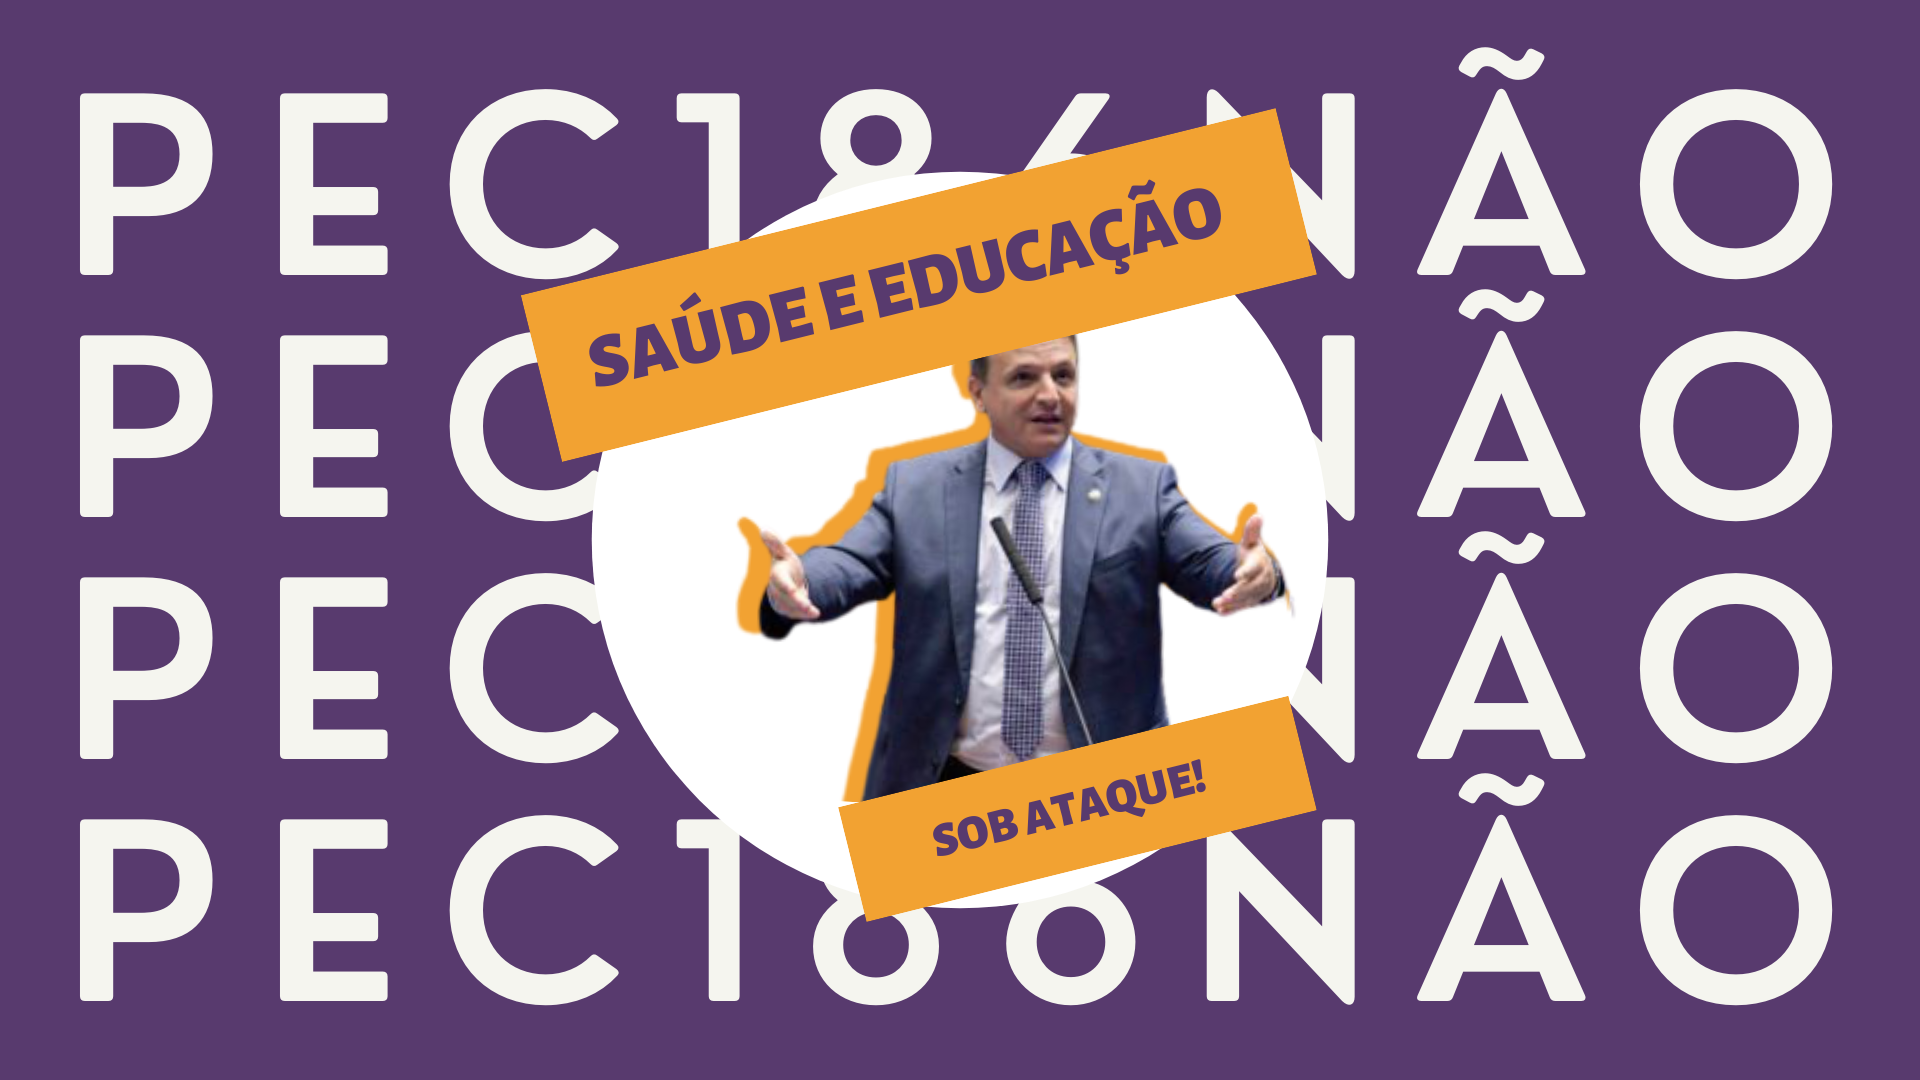 Imagem contem a foto do senador Marcio Bittar e o texto "Saúde e educação sob ataque! PEC186 não"